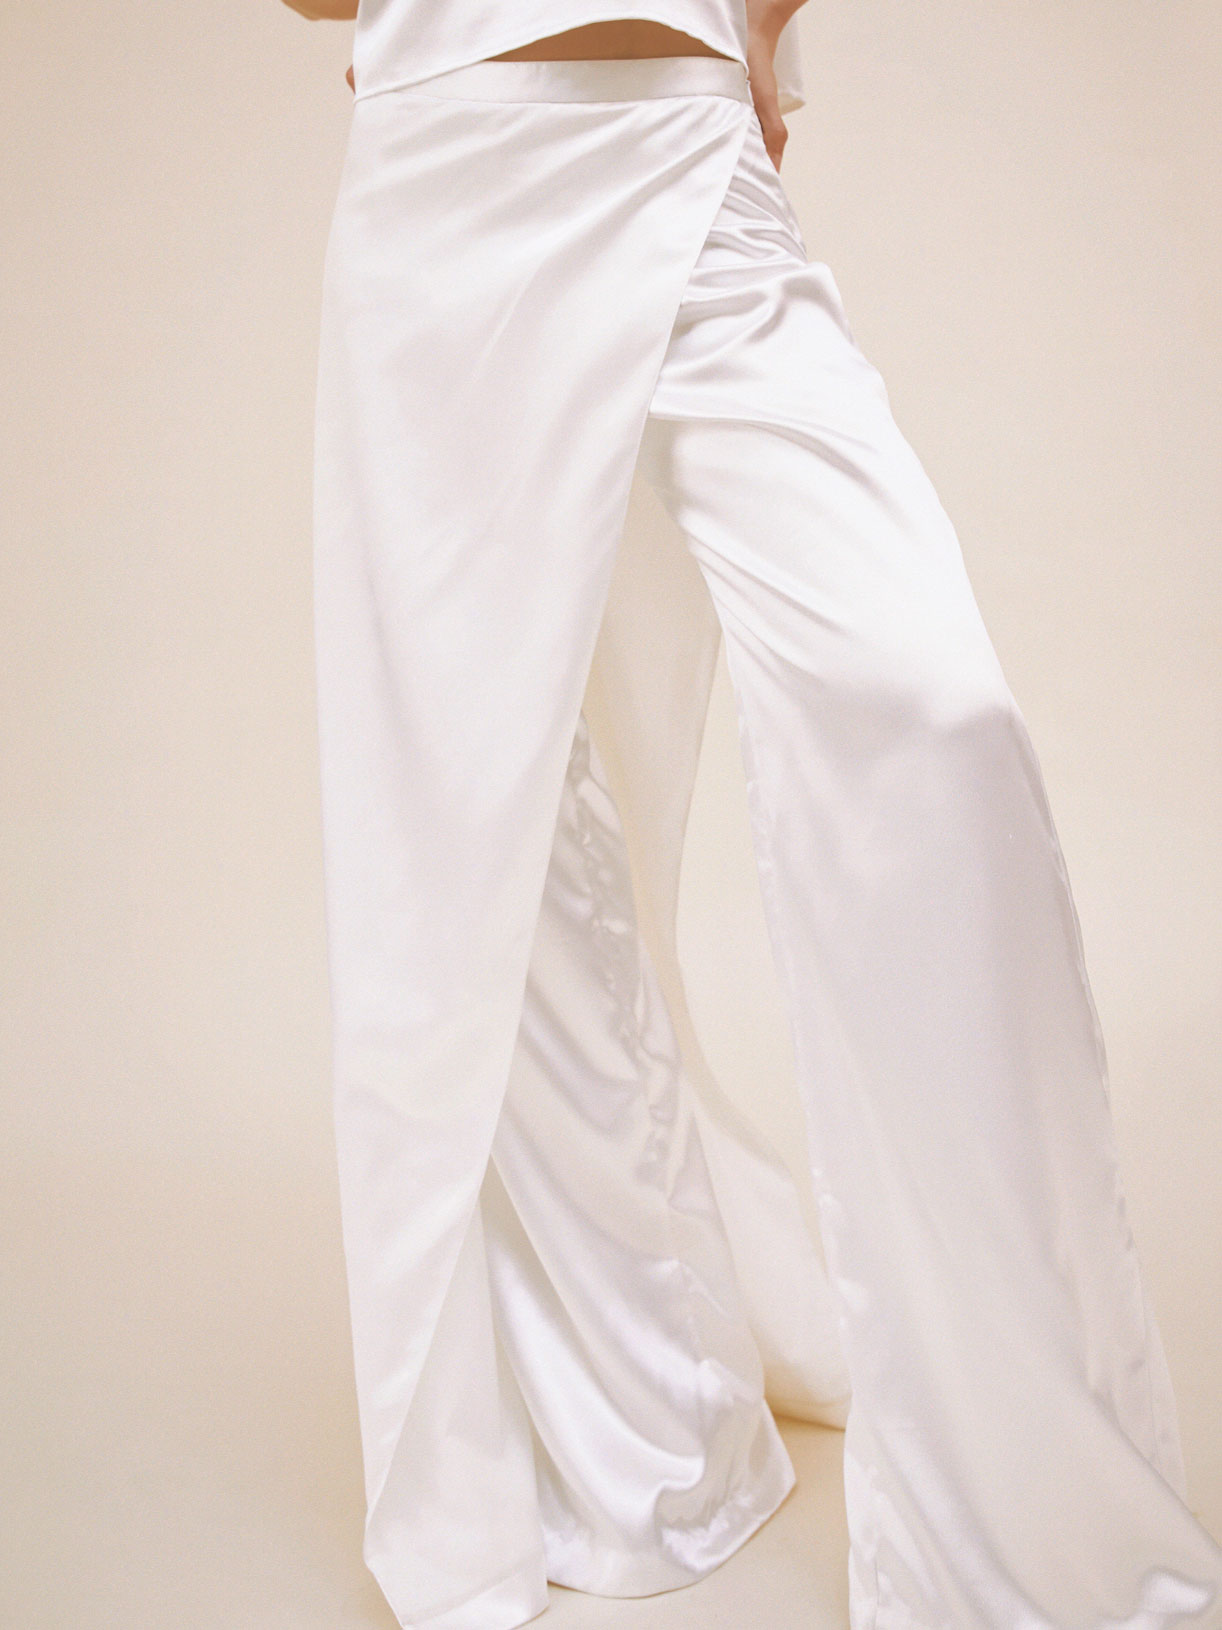 Pantalon tailleur de mariée blanc créateur original et écoresponsable - Creatrice de robe de mariée éthique et bio a Paris - Myphilosophy